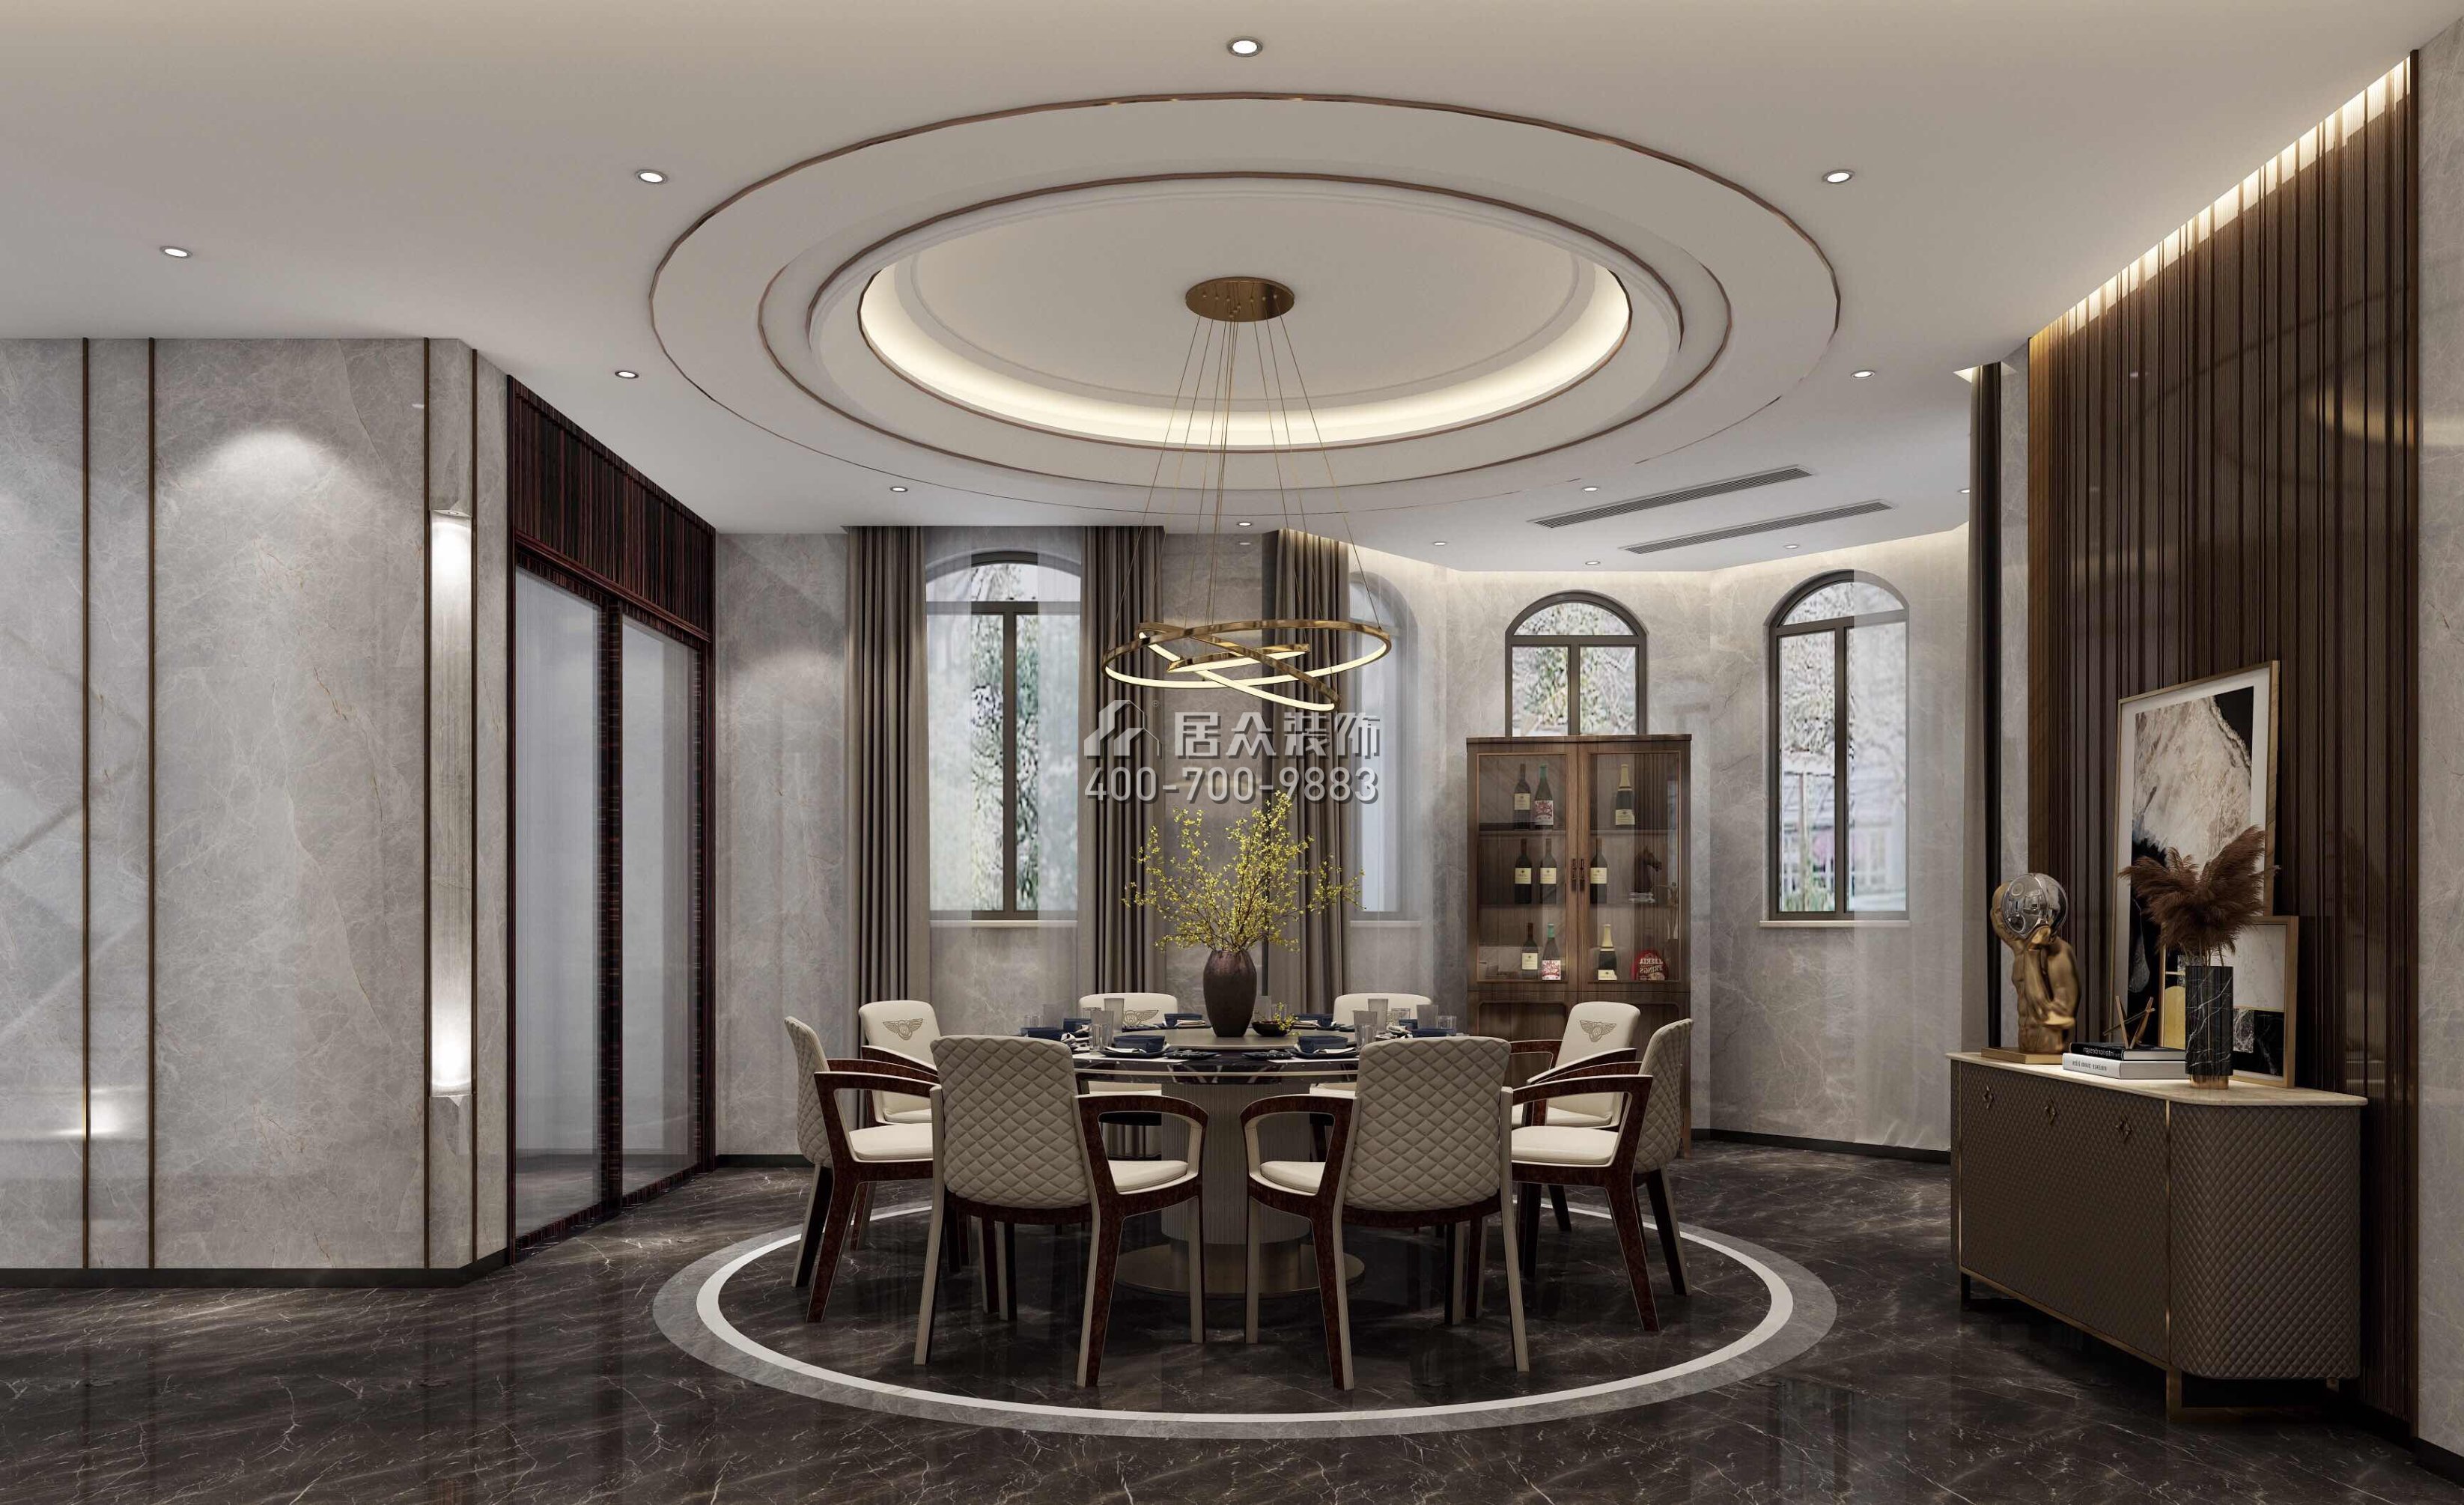 江畔豪庭800平方米現代簡約風格別墅戶型餐廳裝修效果圖